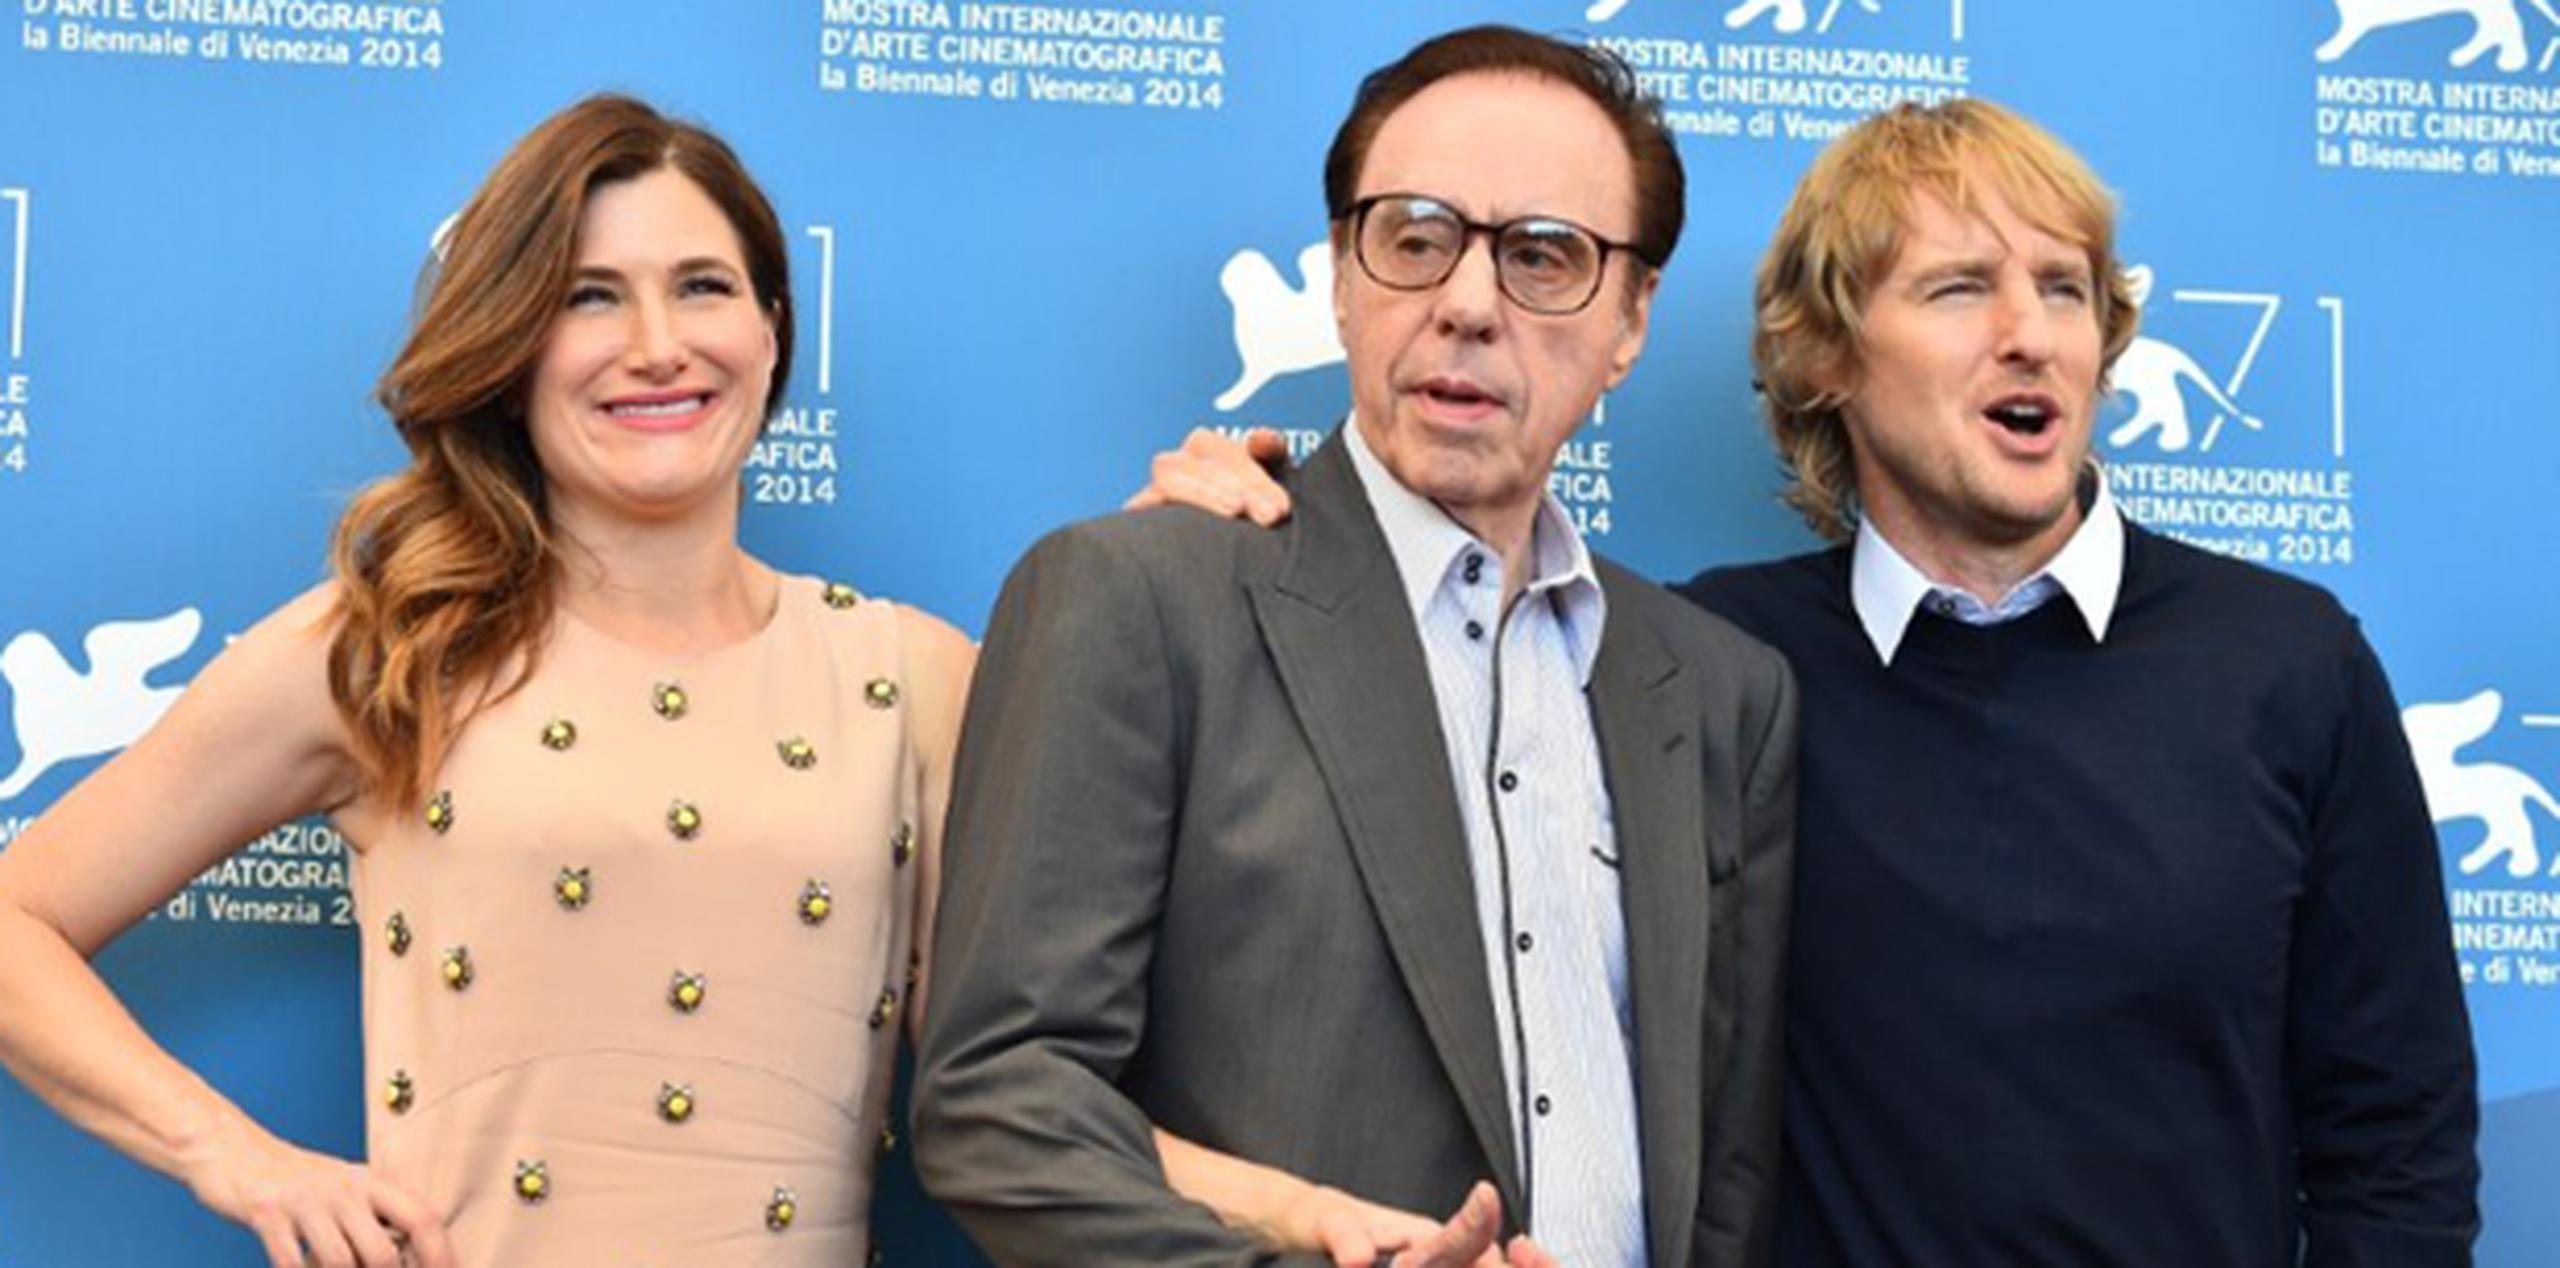 El director Peter Bogdanovich es flanqueado por los actores Kathryn Hahn y Owen Wilson durante la presentación de hoy en Venecia del filme "She's Funny That Way". (AP)